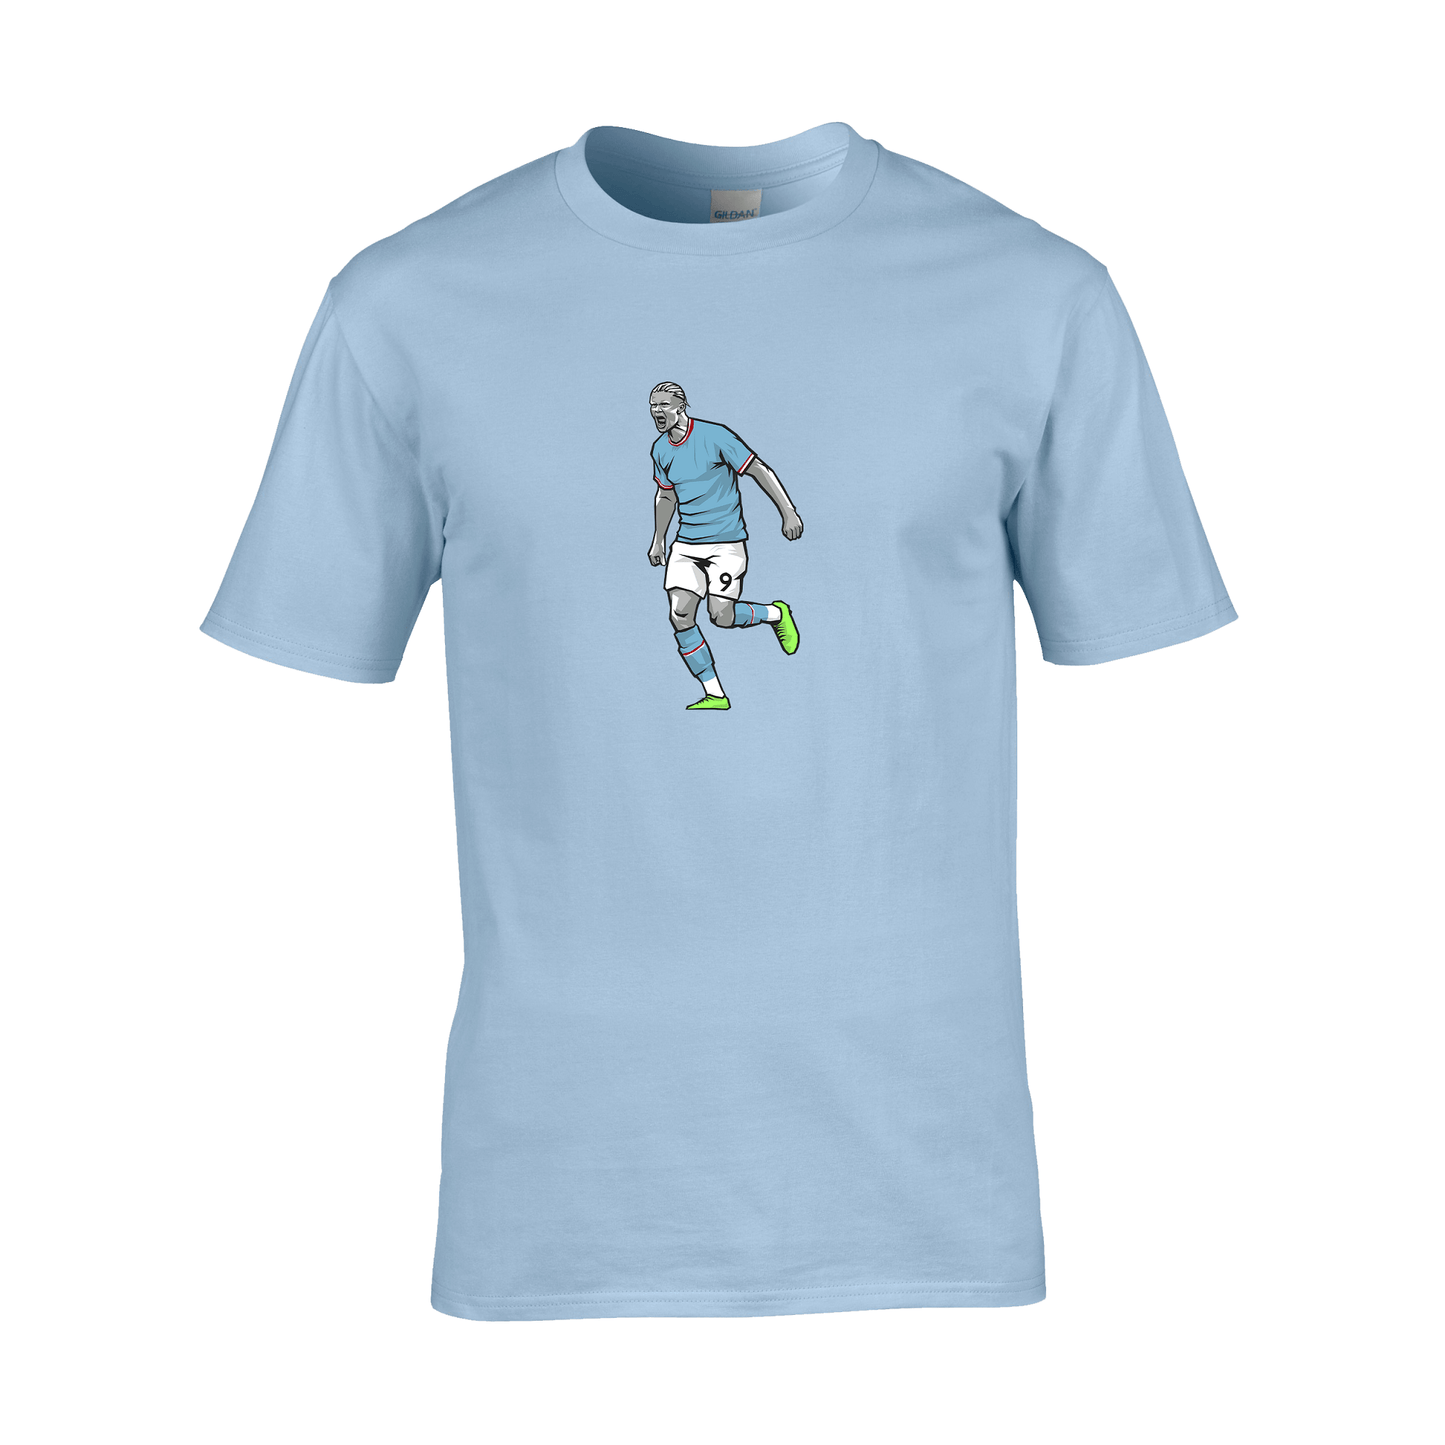 Erling Haaland Manchester City T-Shirt